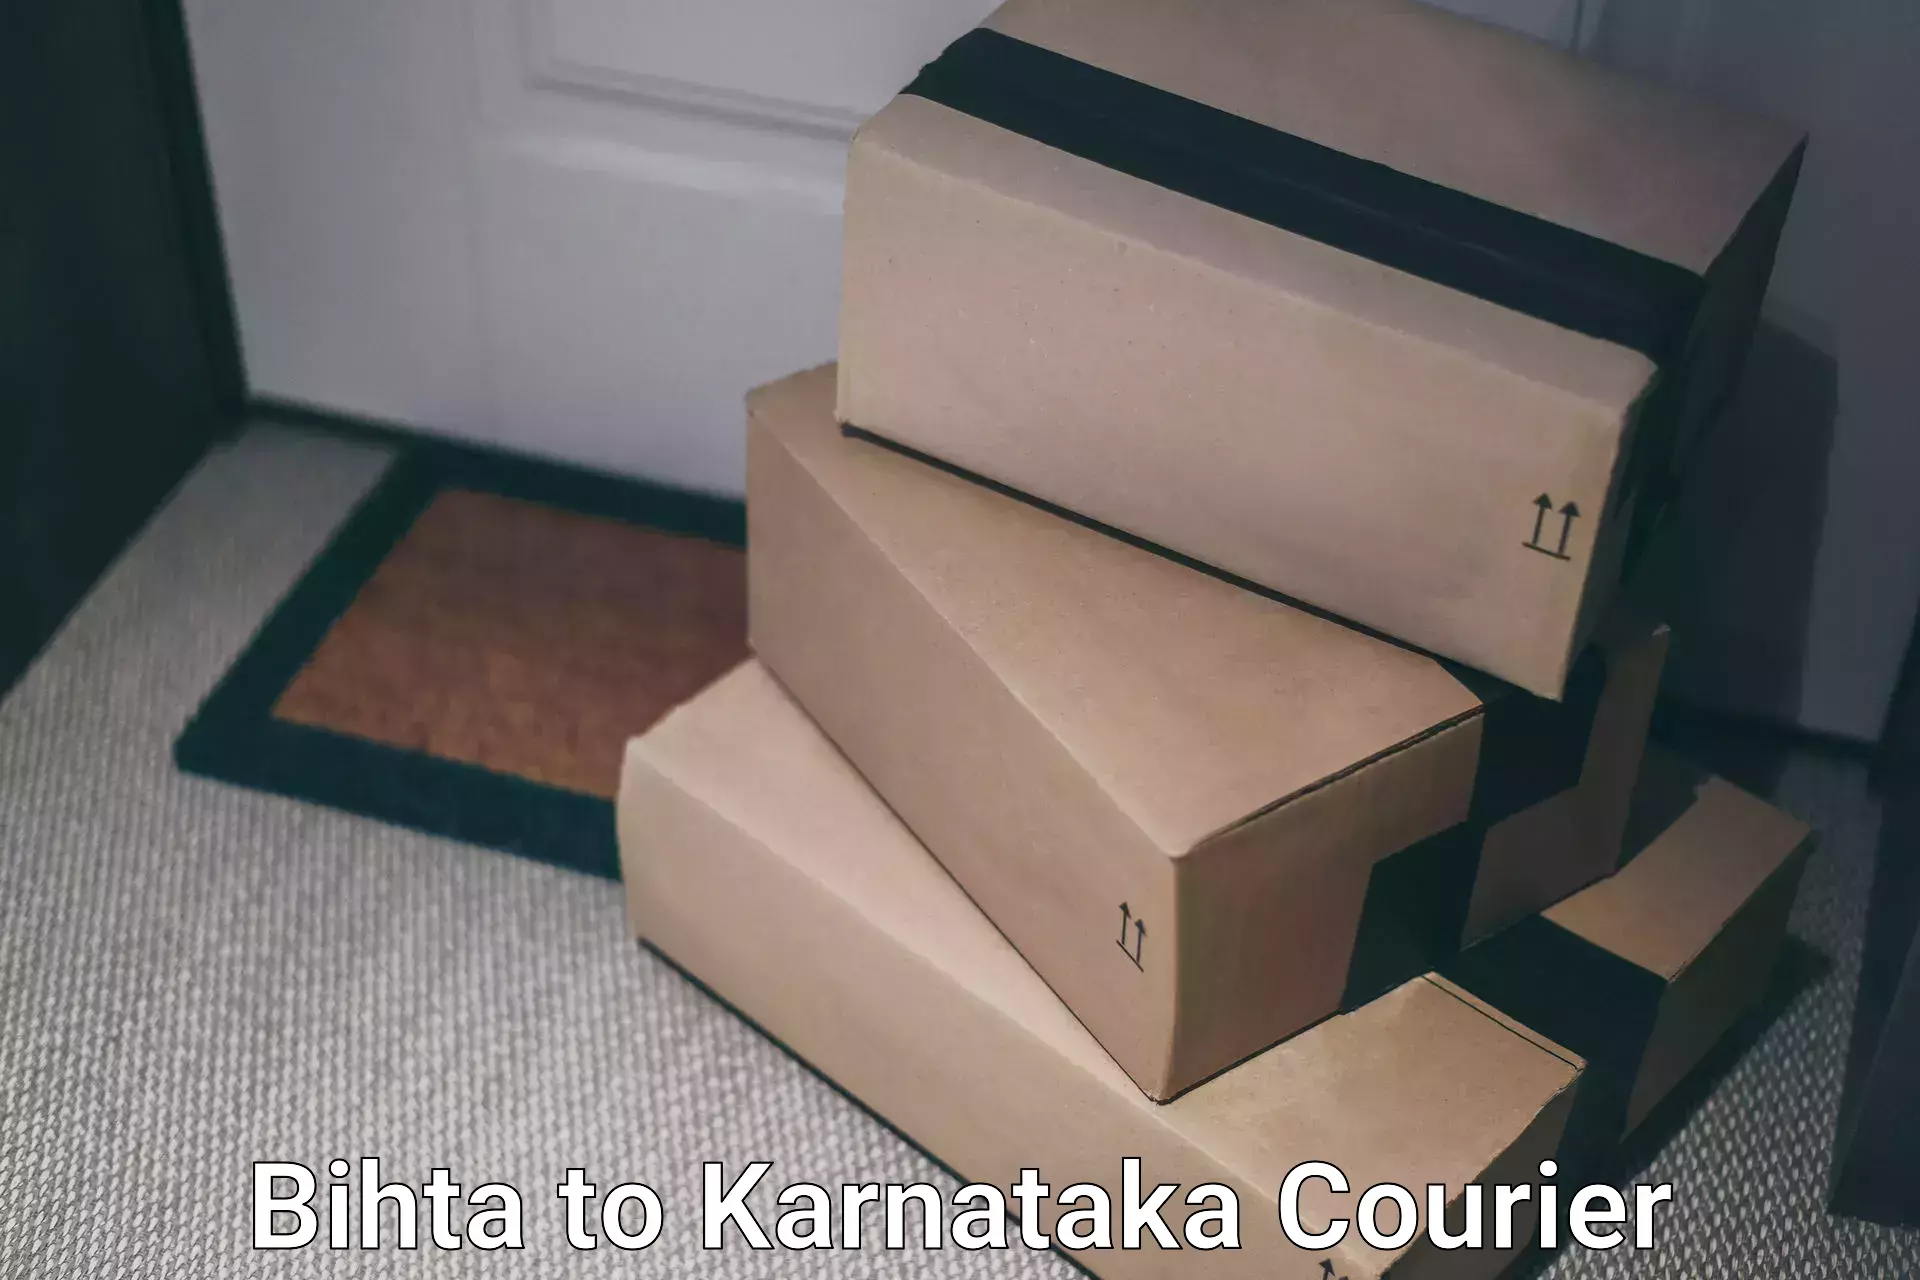 Express courier capabilities Bihta to Karnataka